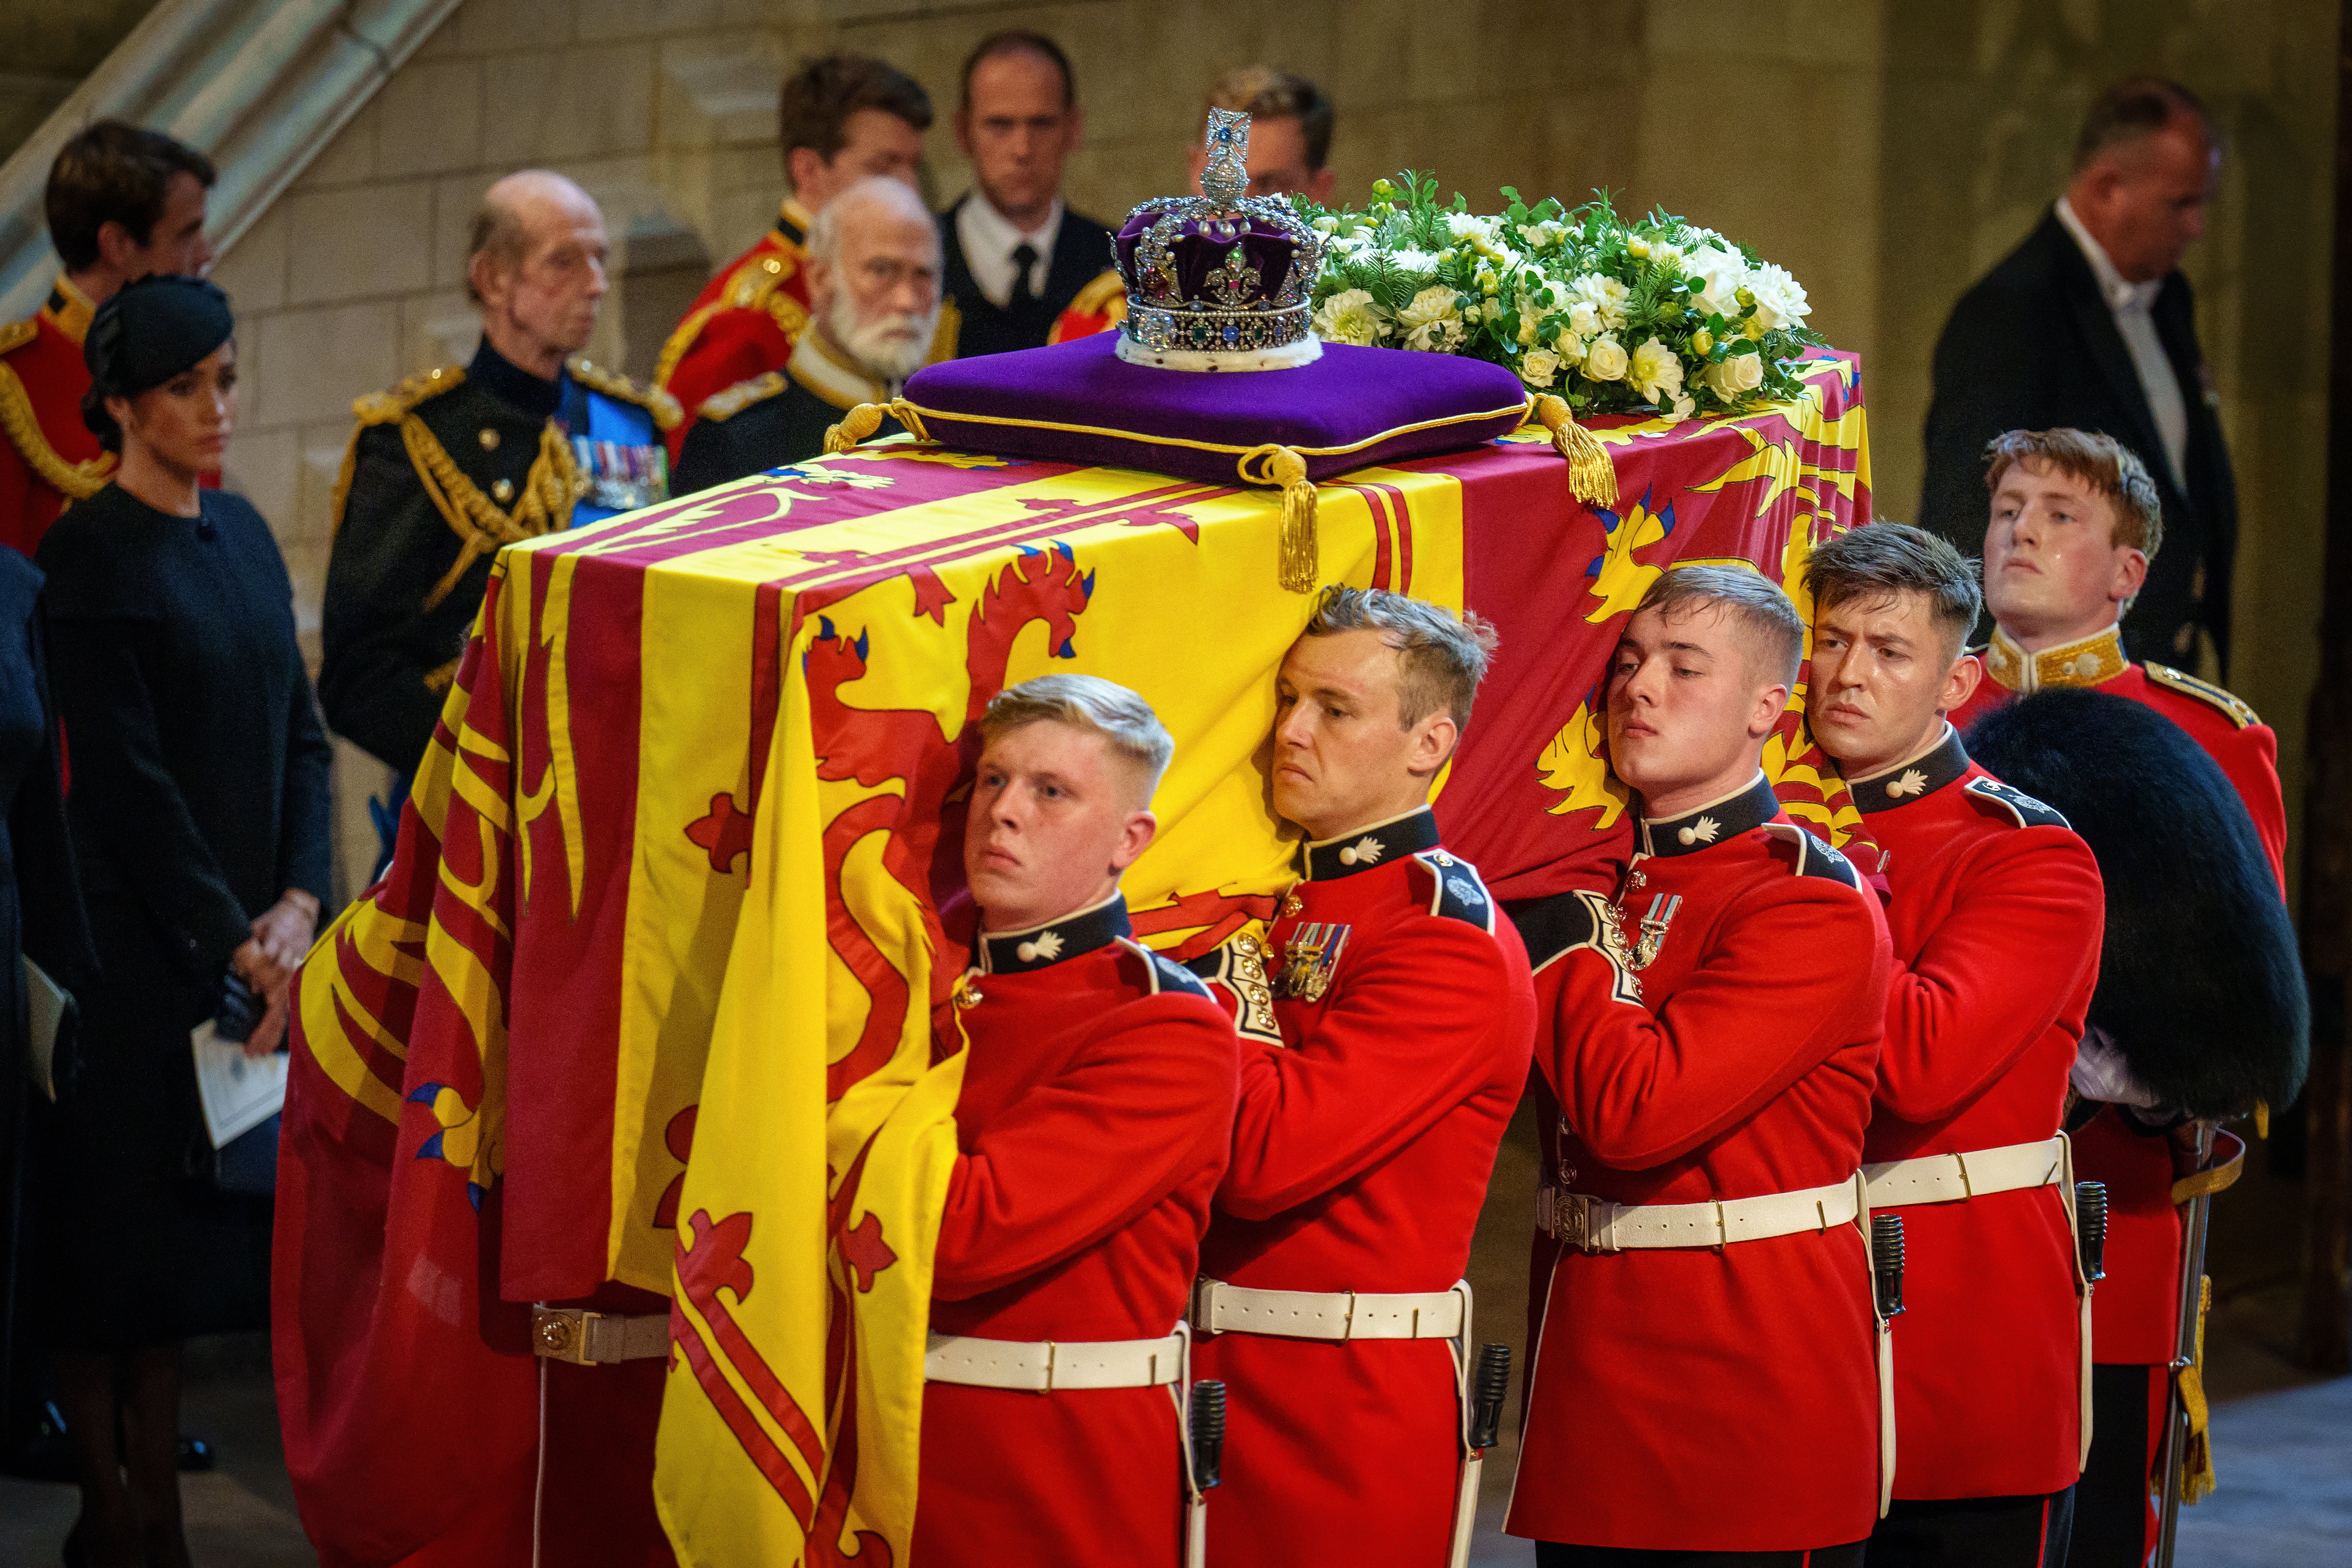 Der Sarg von Königin Elizabeth II. wird von Gardisten des 1. Bataillons der Grenadier Guards in den Palace of Westminster getragen, während der Prozession zur Aufbahrung von Königin Elizabeth II. am 14. September 2022 in London, England | Quelle: Getty Images